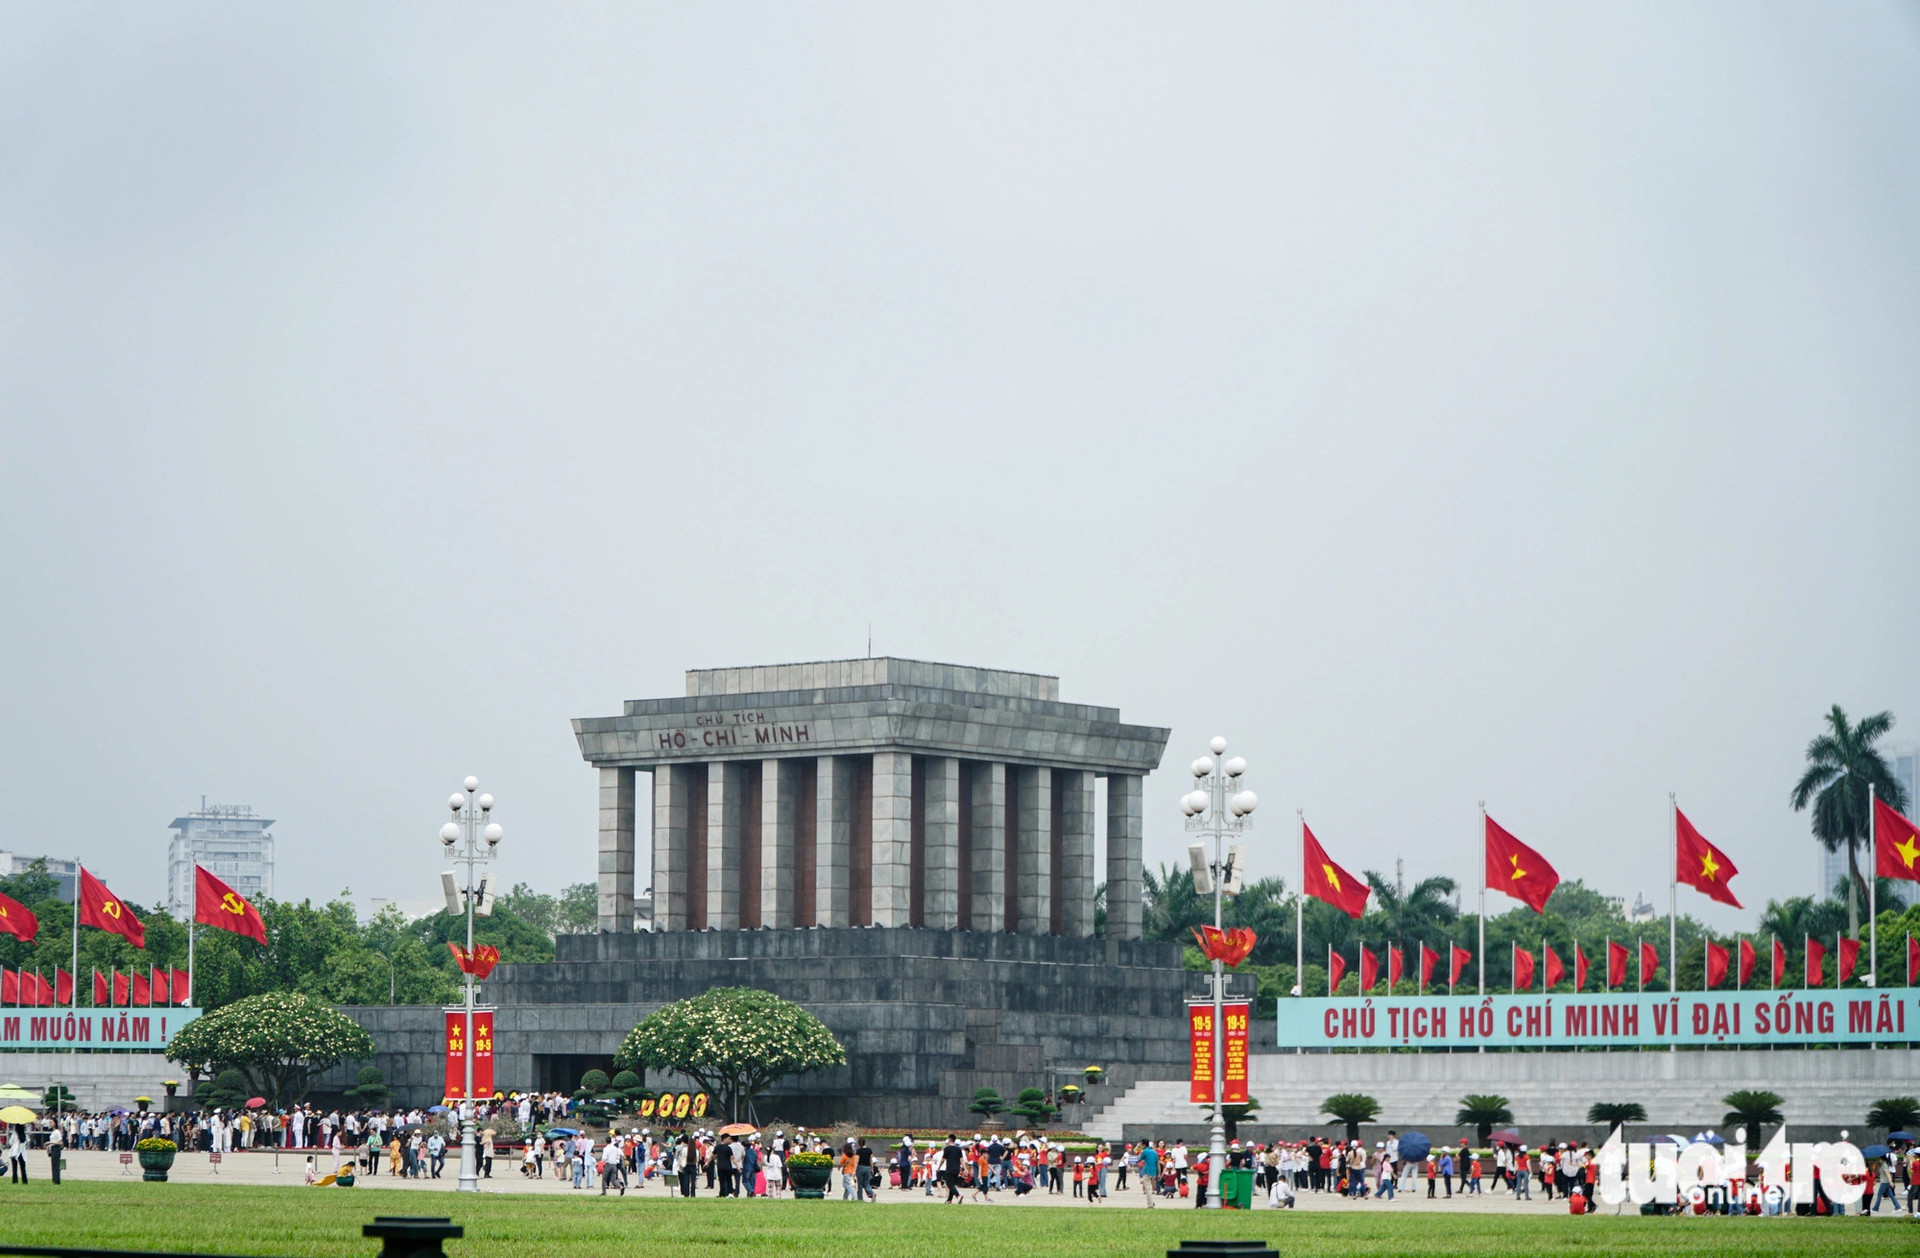 Hàng ngàn người về lăng Chủ tịch Hồ Chí Minh trong sáng 19-5 - Ảnh: NGUYỄN HIỀN